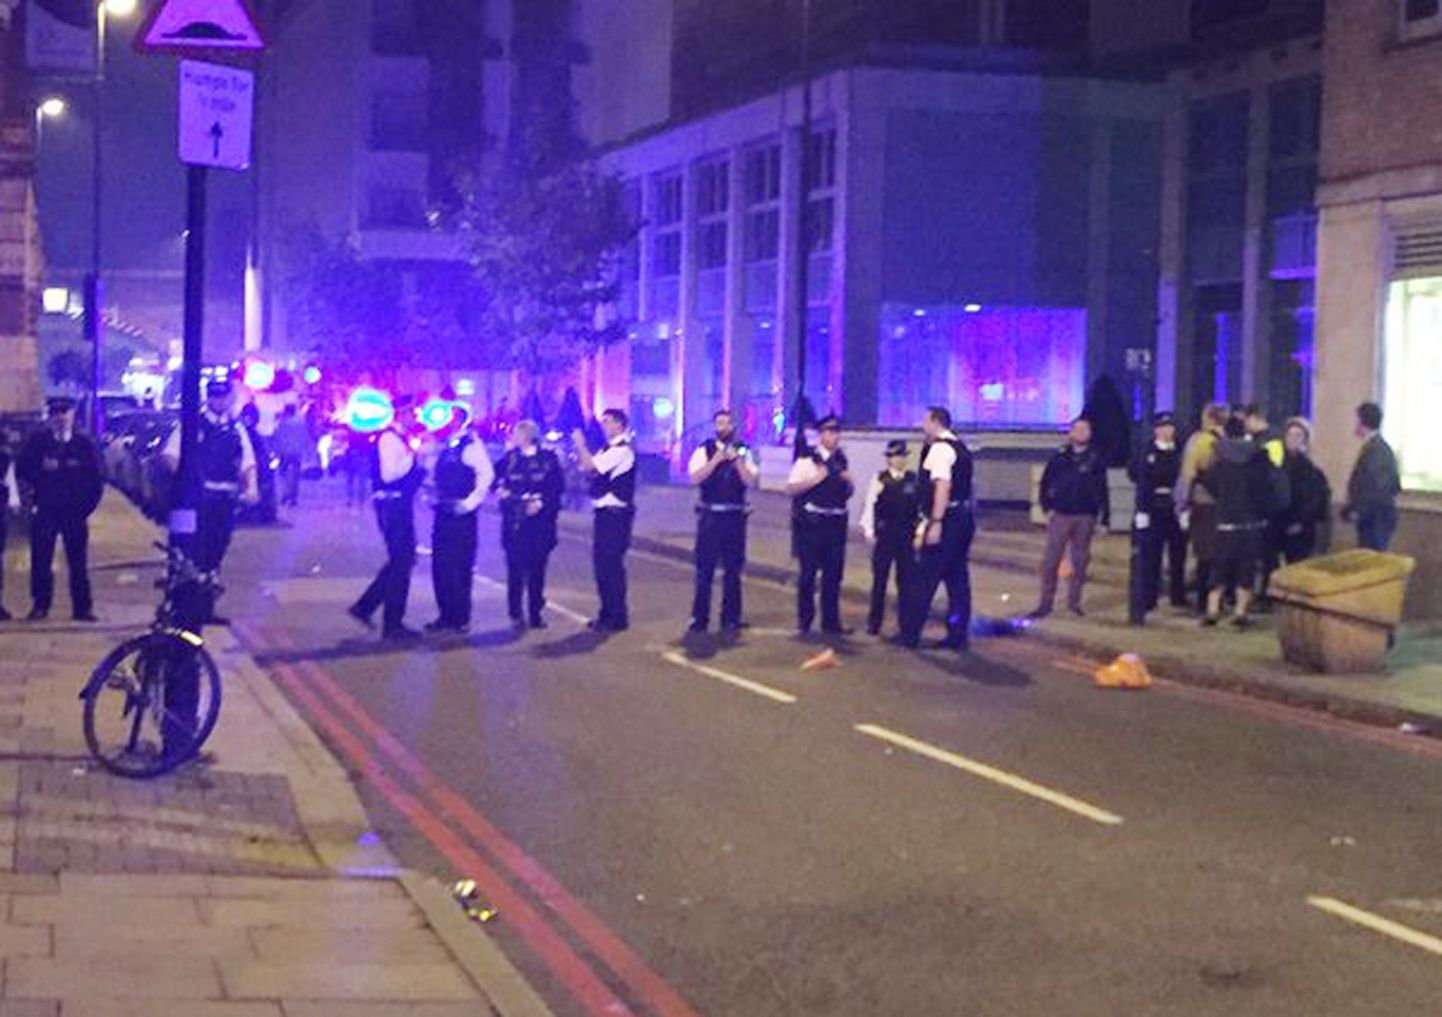 Londonis puhkesid politseinike ja rahvamassi vahel kokkupõrked.